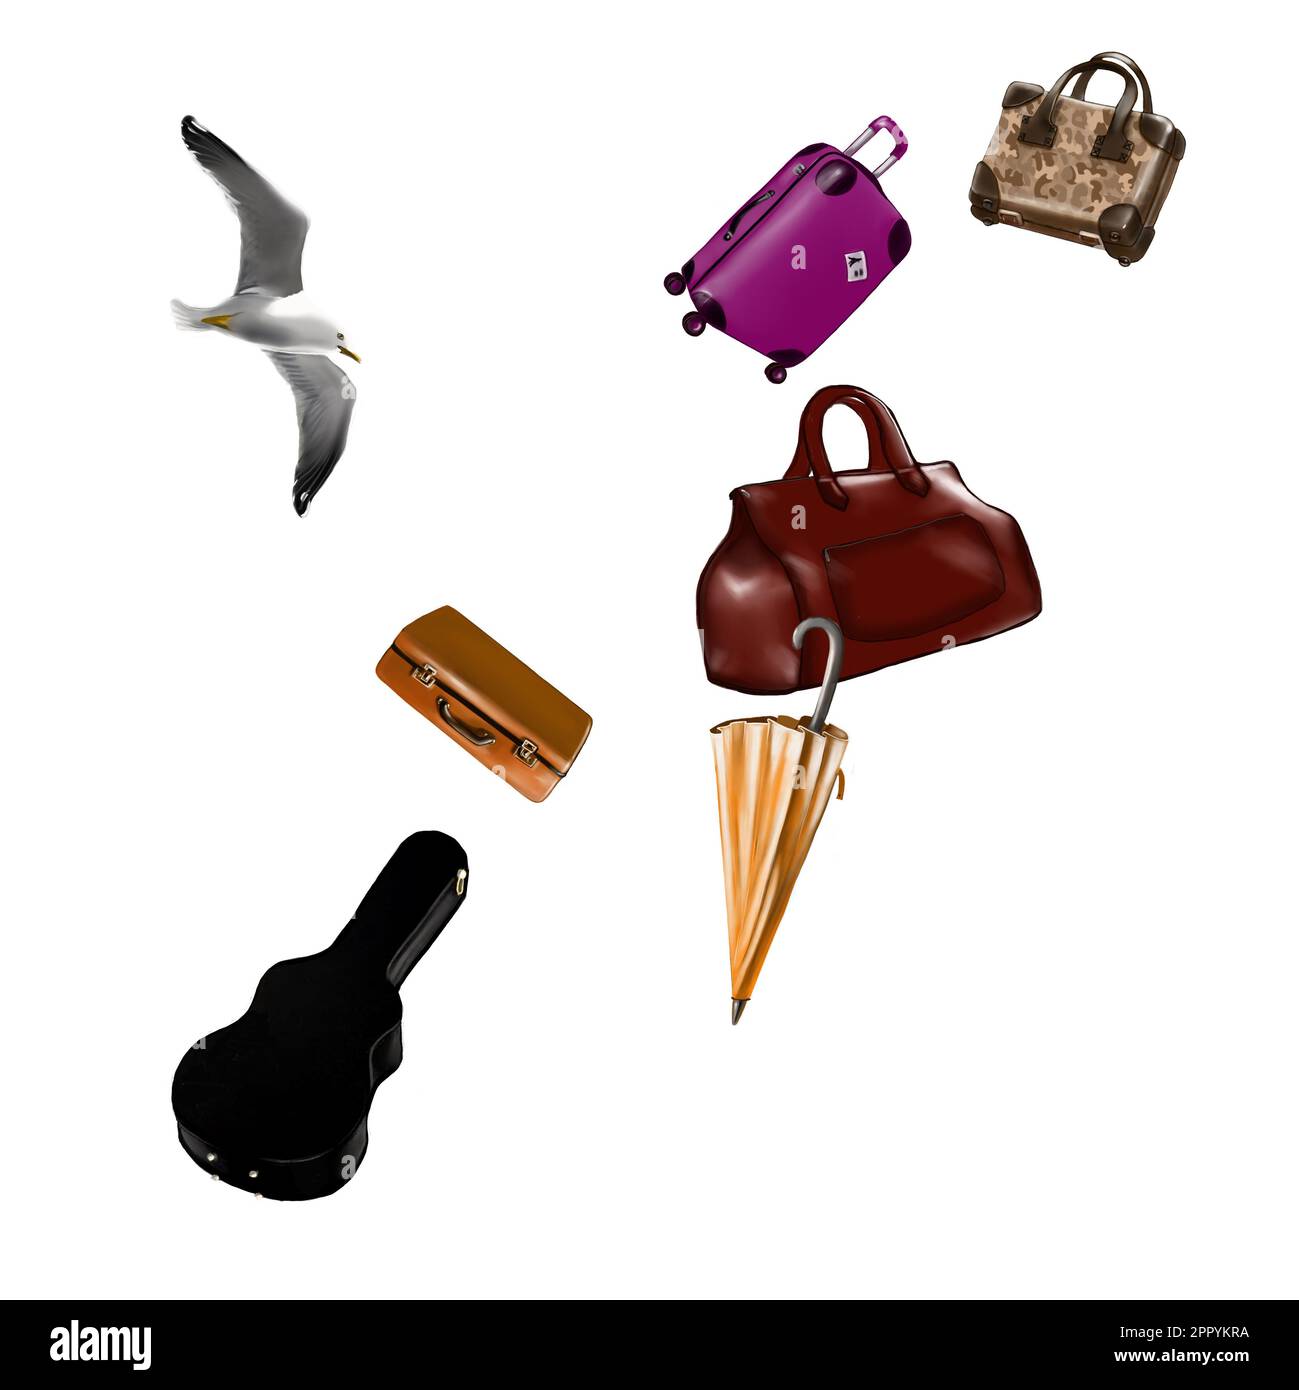 Gepäck von Koffern, Taschen, Korb, Gitarrenkoffer, Schirm, Möwe Stockfoto